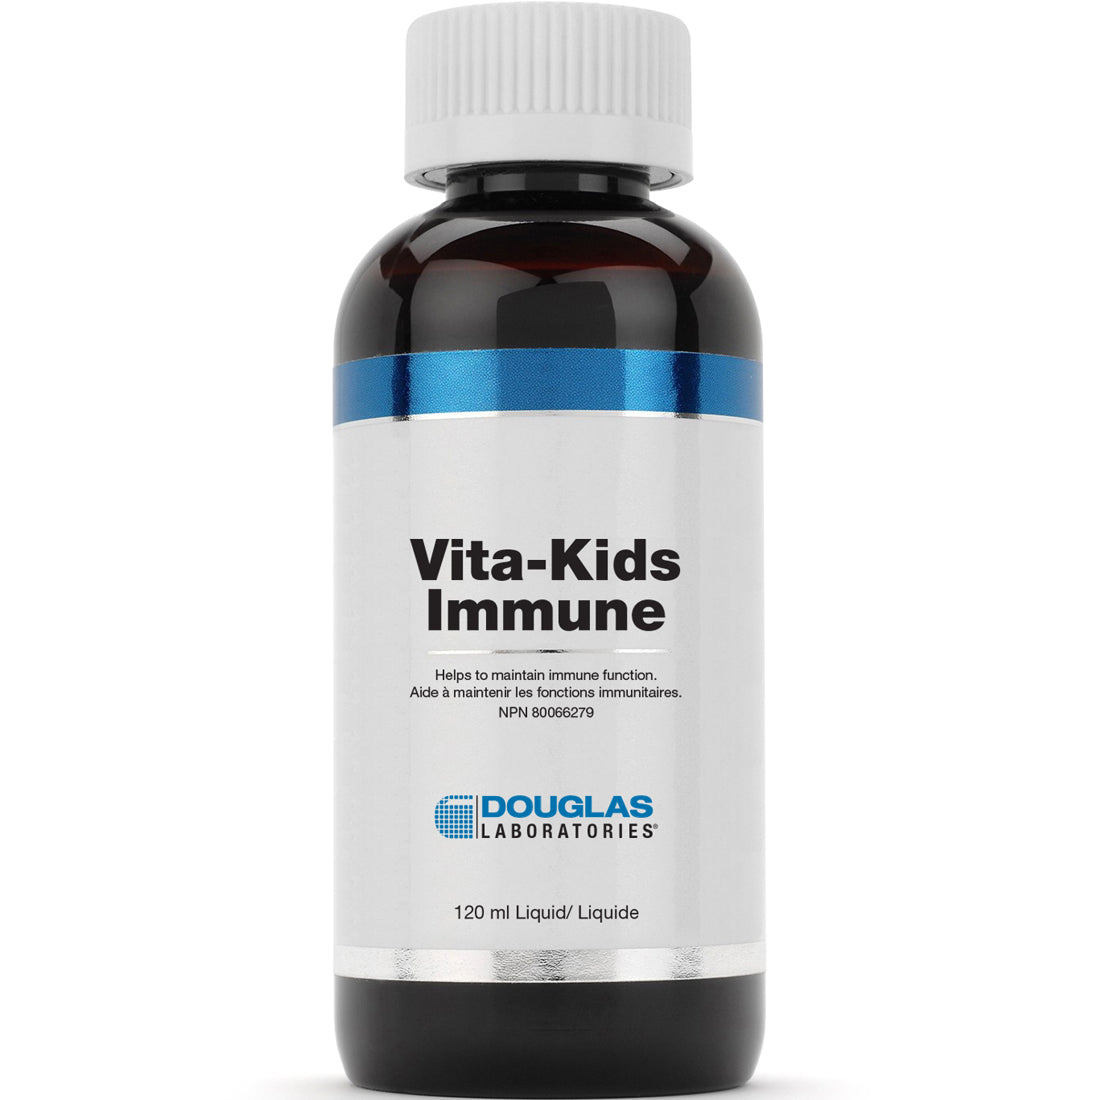 Douglas Laboratories Vita-Kids Immune, 120ml